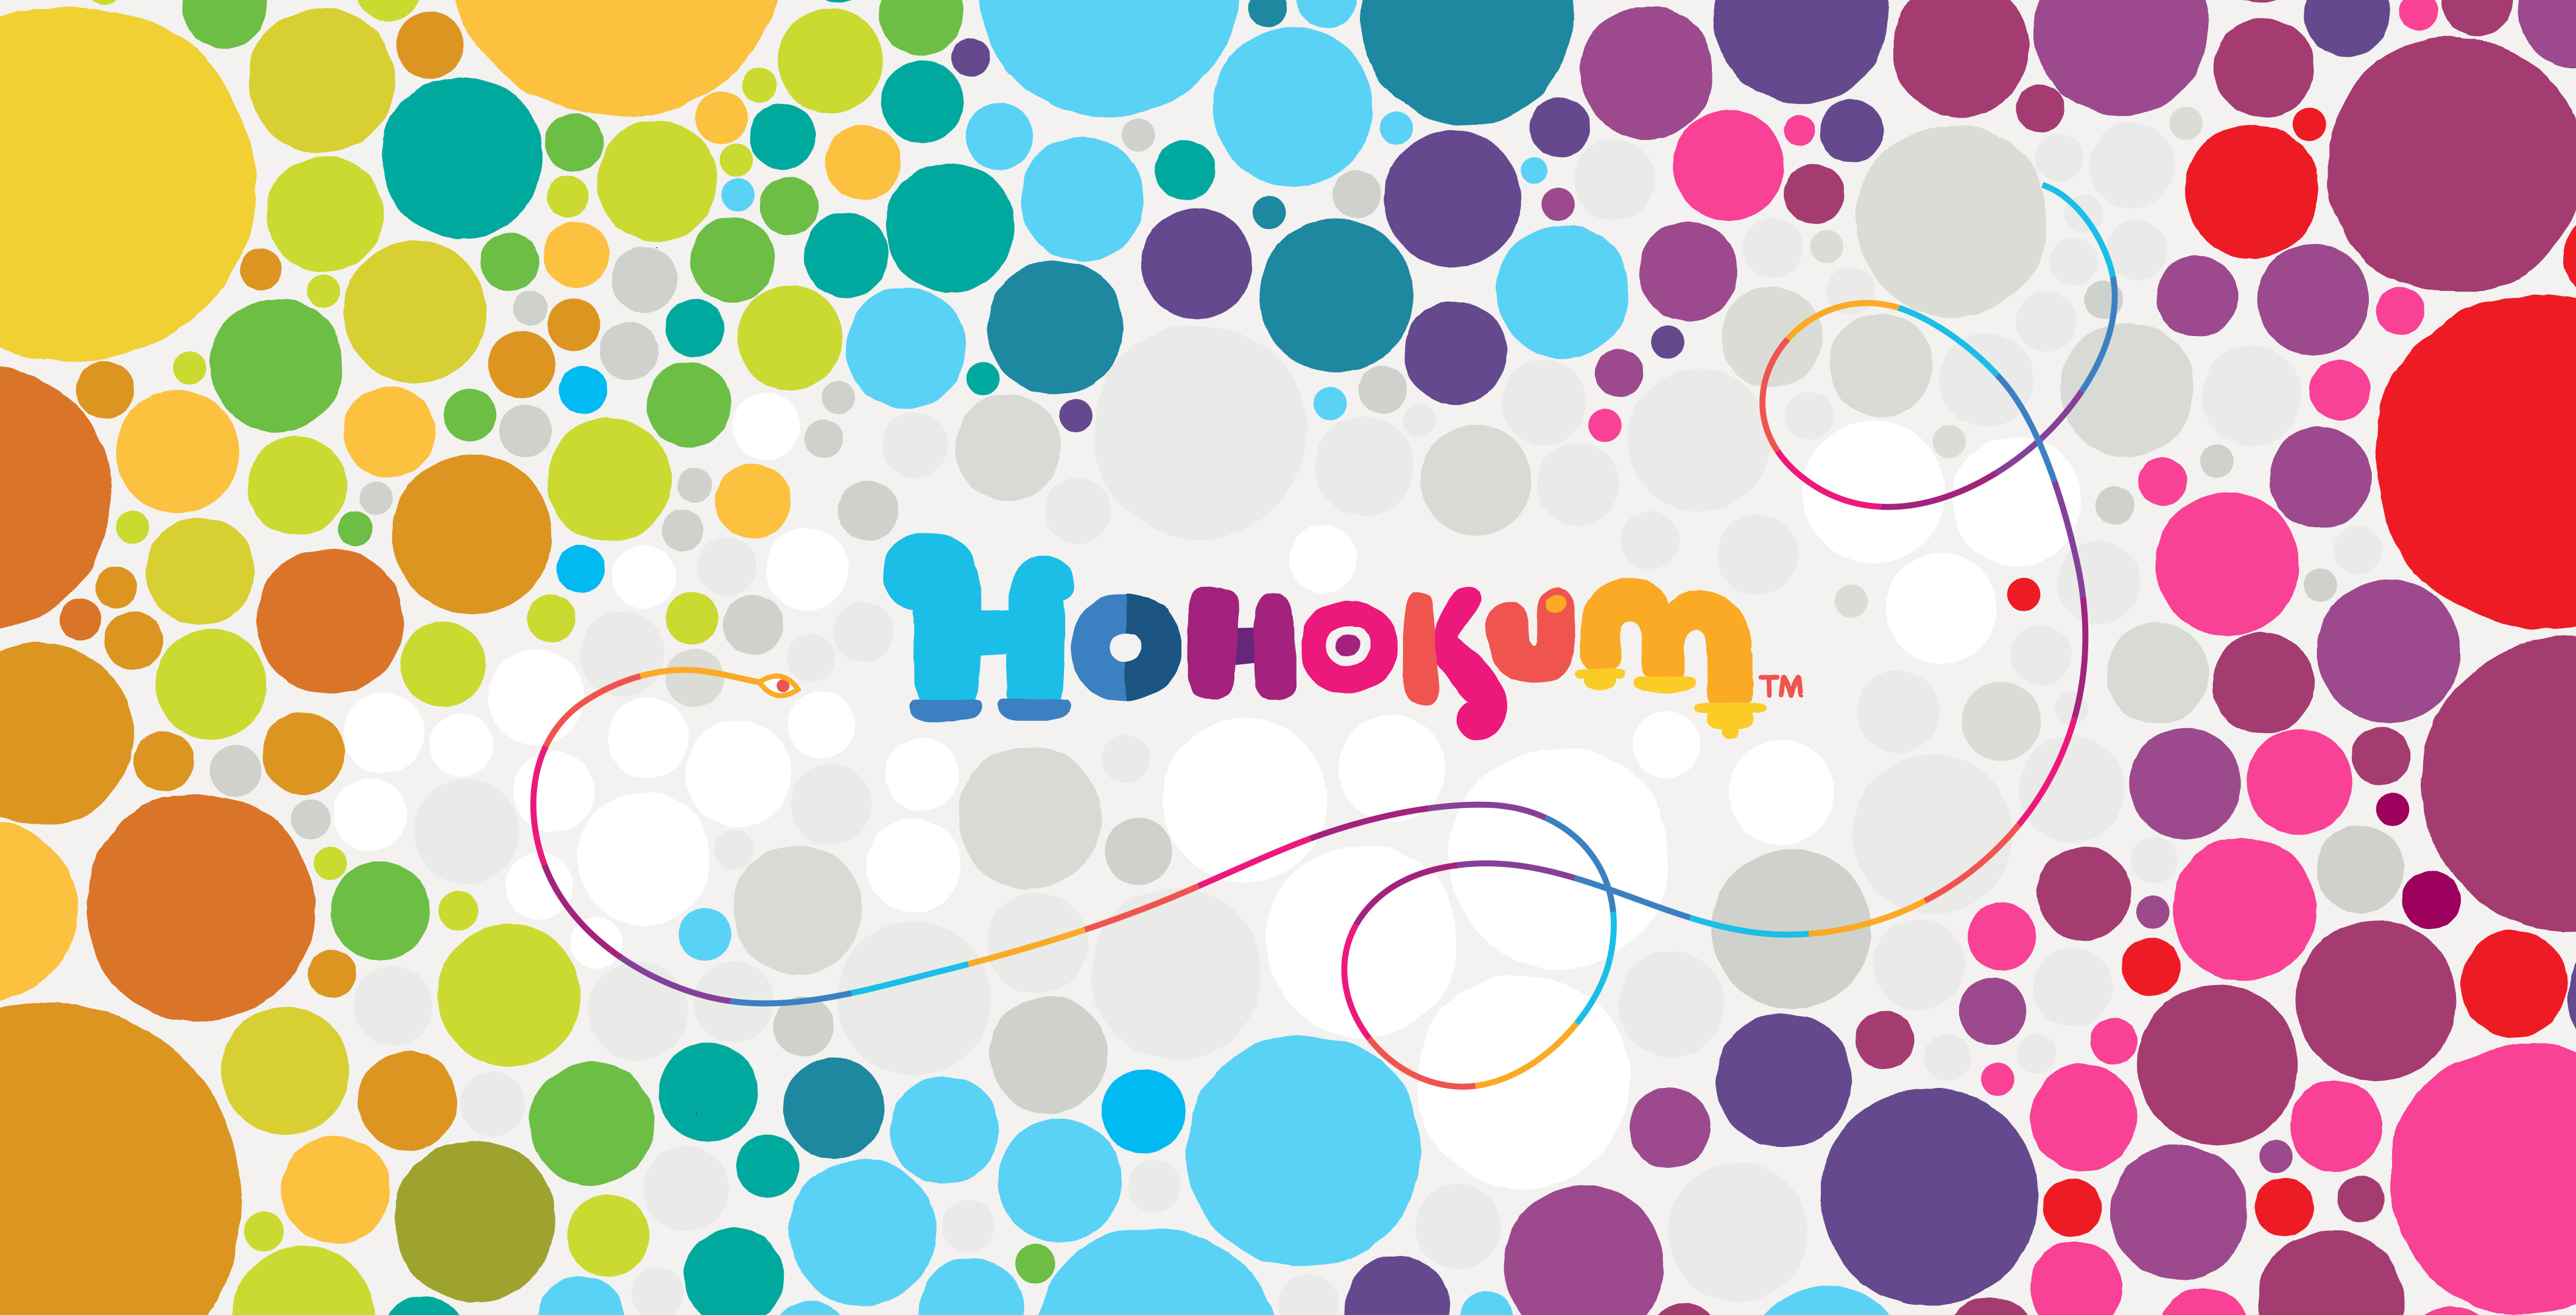 Hohokum 4k Ultra HD Wallpaper